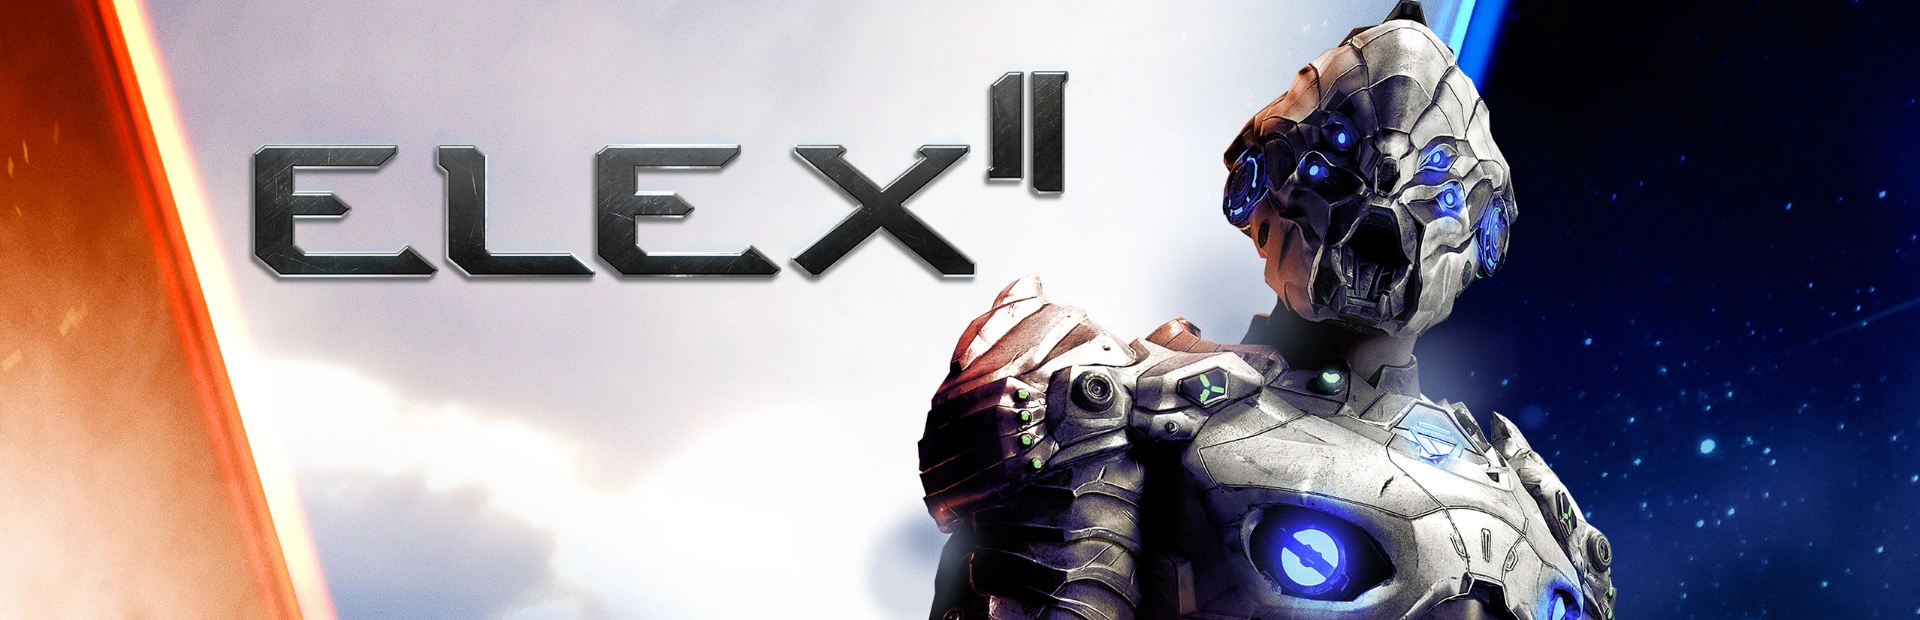  دانلود بازی Elex II برای کامپیوتر | گیمباتو